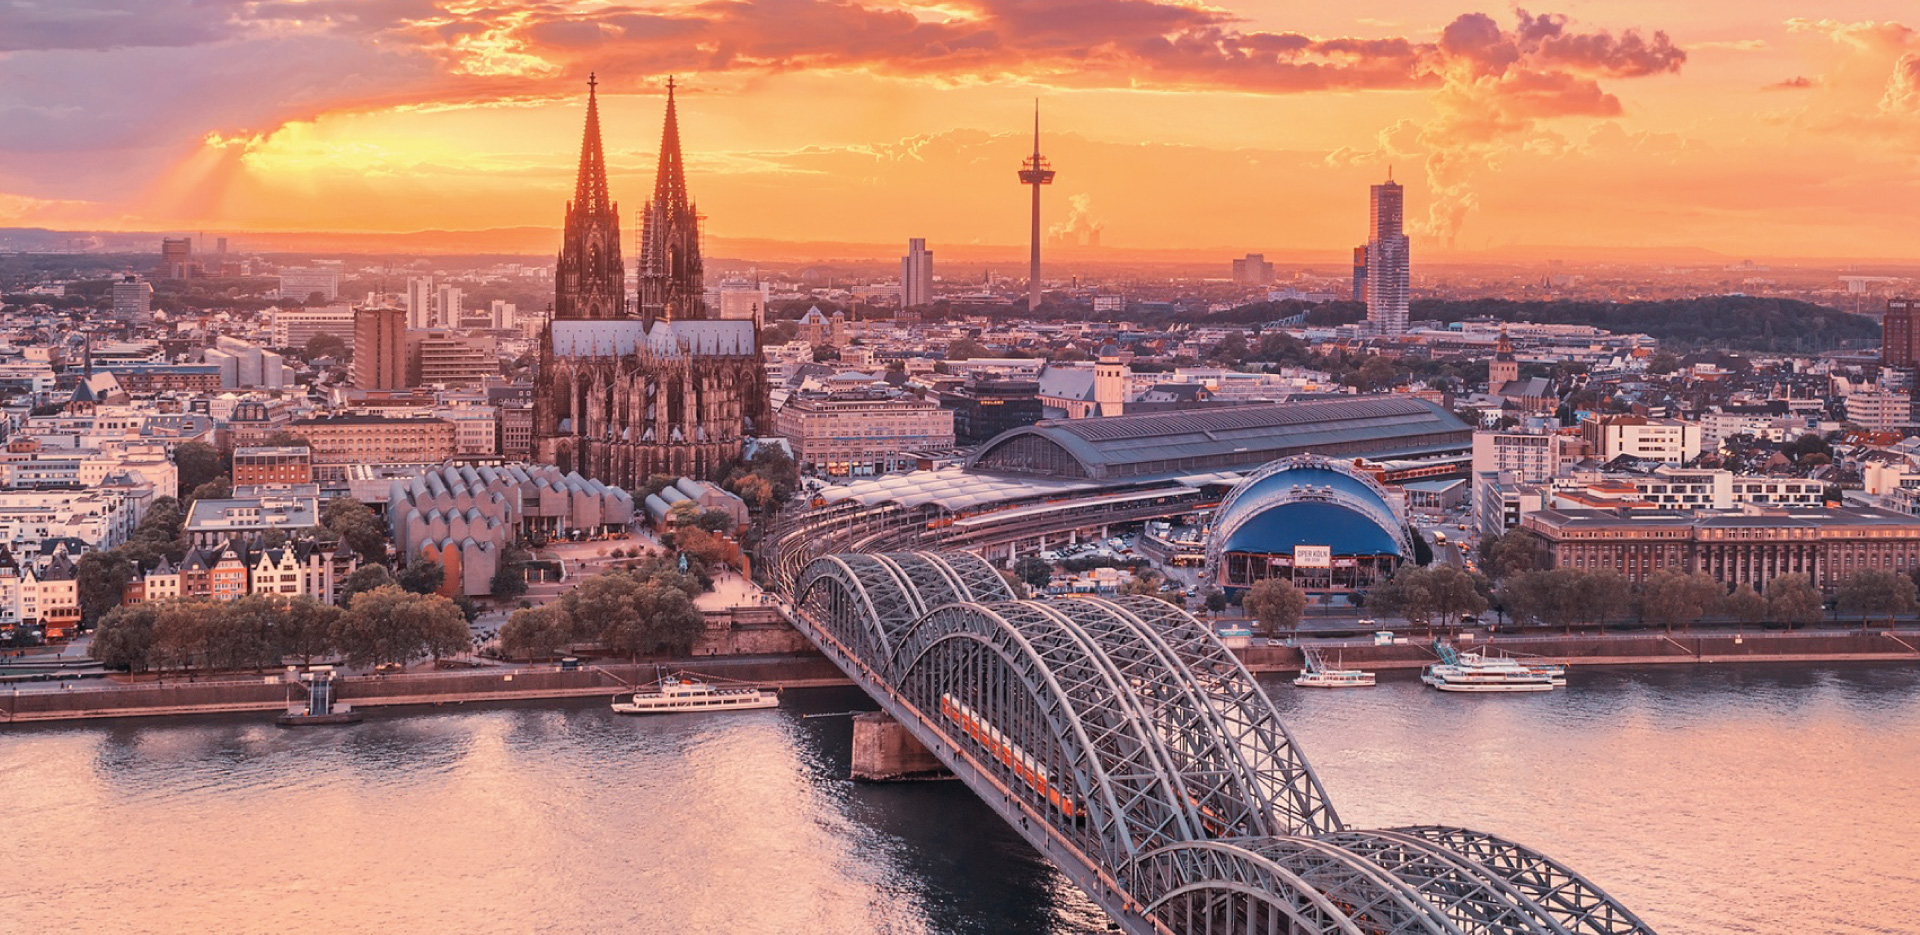 Khung cảnh thành phố tuyệt đẹp tại Đức 